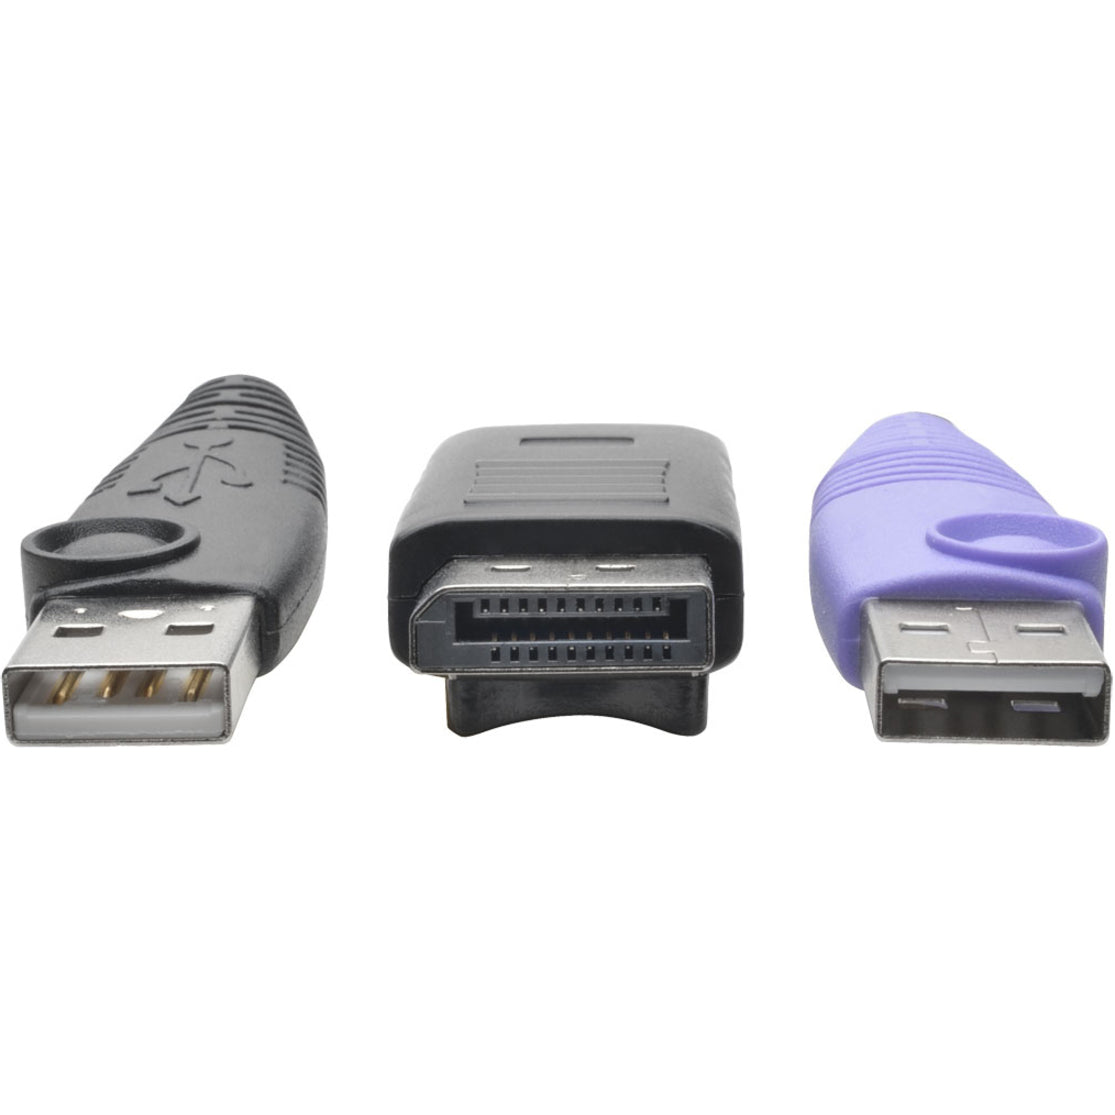 تريب لايت B055-001-UDP وحدة واجهة خادم DisplayPort USB NetDirector ، KVM Console / Extender، 164.04 قدم مسافة تشغيل قصوى ، متوافق مع TAA، مستقلب تايوان المنشأ ، الضمان المحدود لمدة 3 سنوات